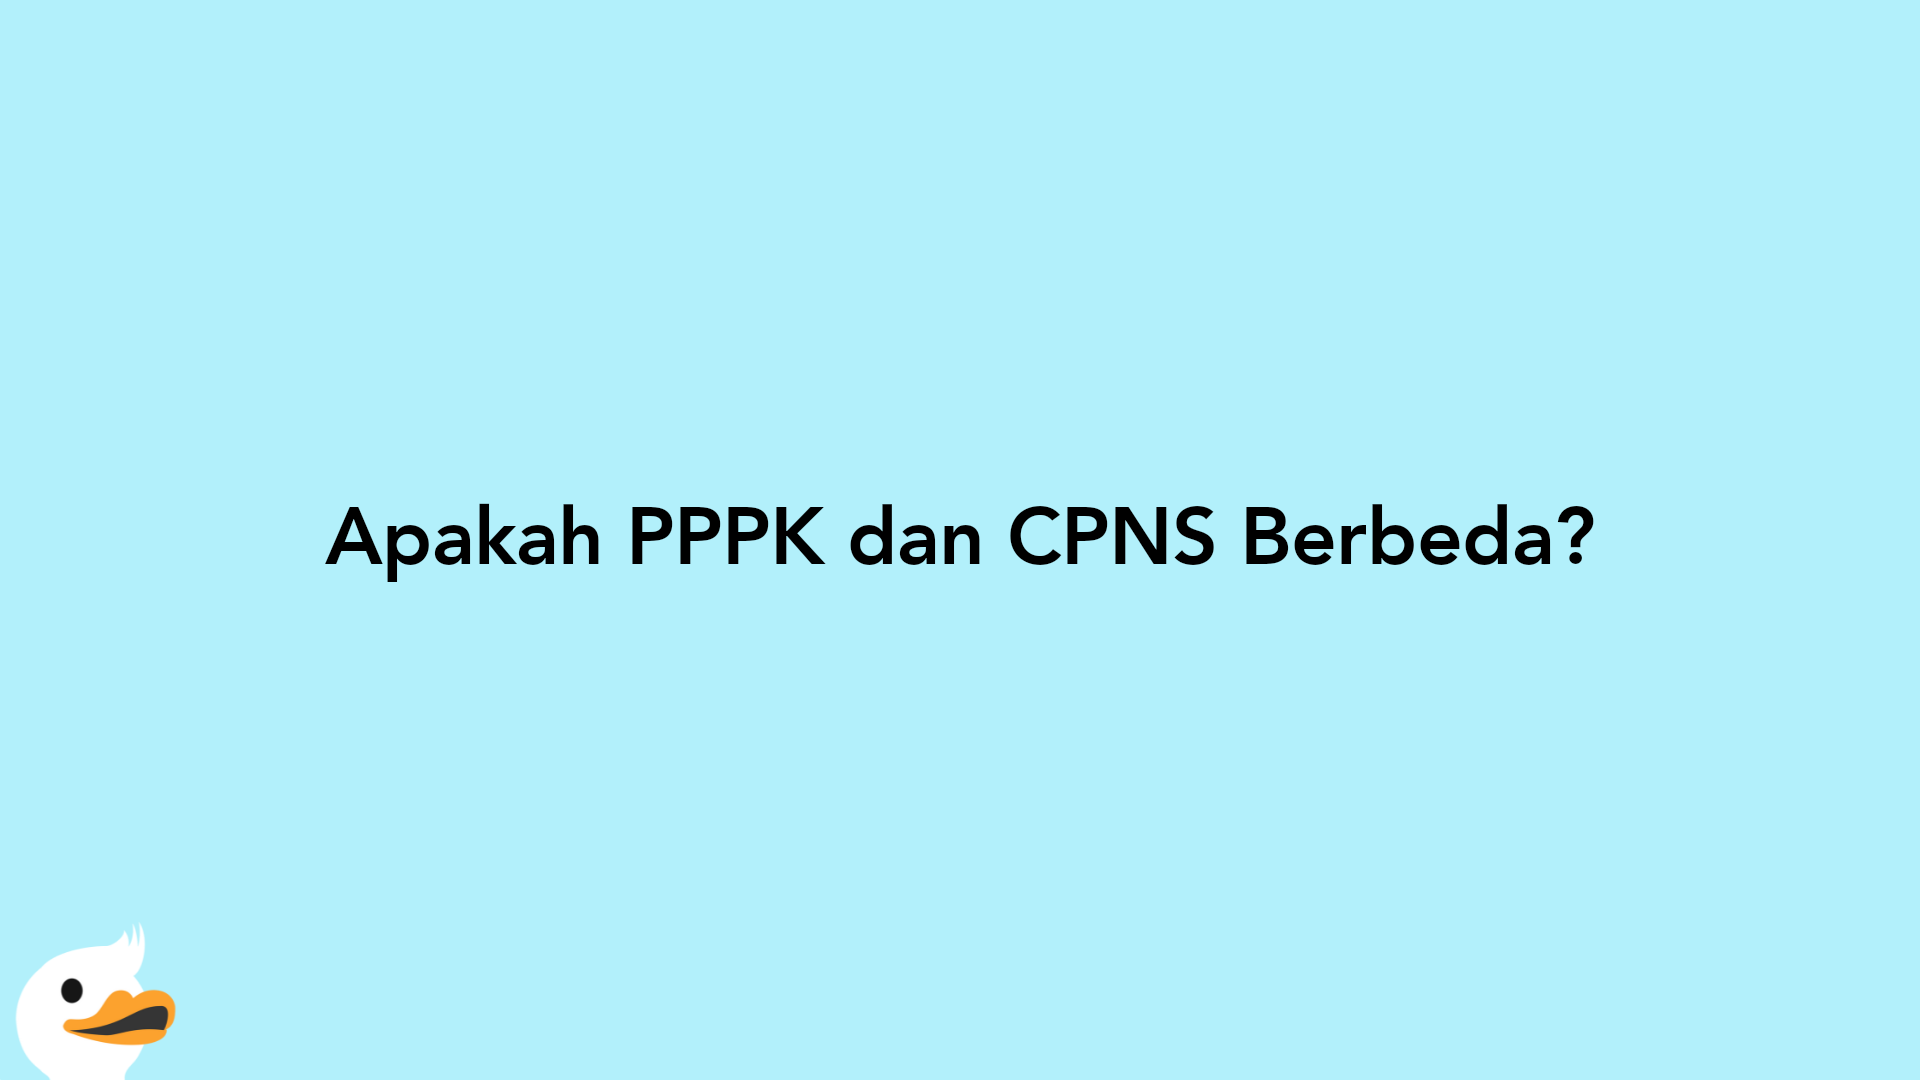 Apakah PPPK dan CPNS Berbeda?